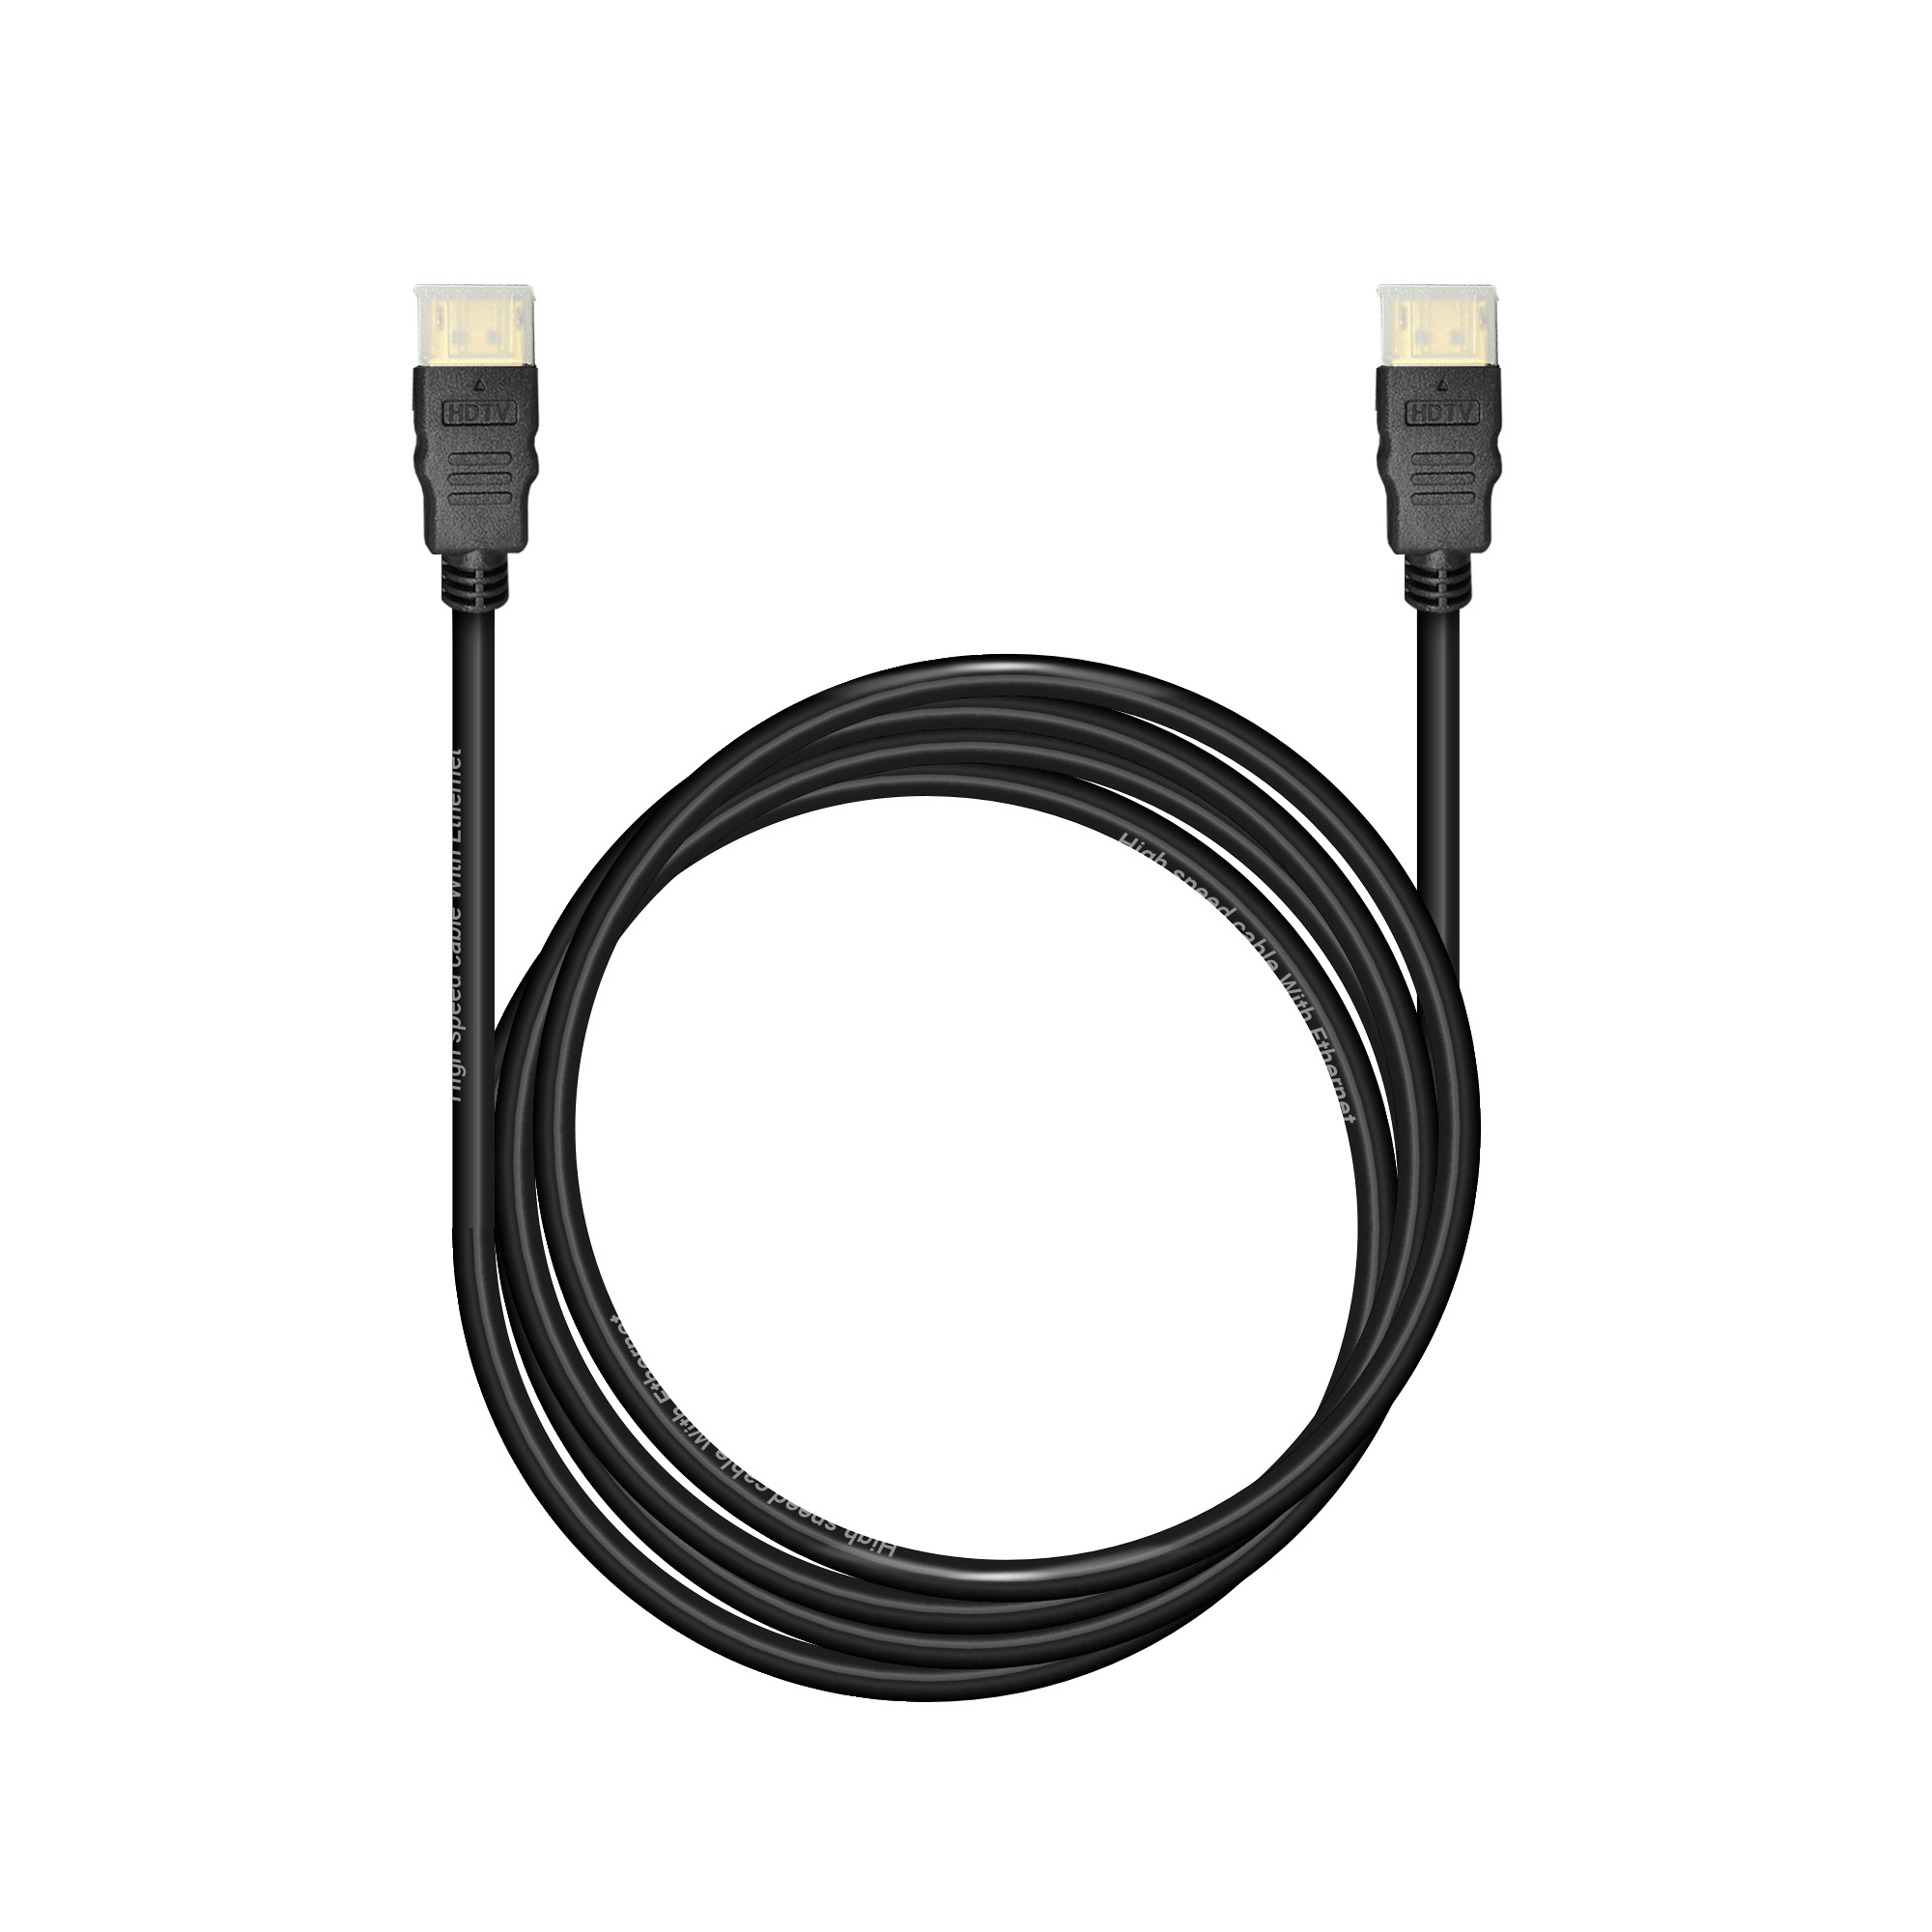 Кабель Bion HDMI v1.4, 19M/19M, 3D, 4K UHD, Ethernet, CCS, экран, позолоченные контакты, 2м, черный